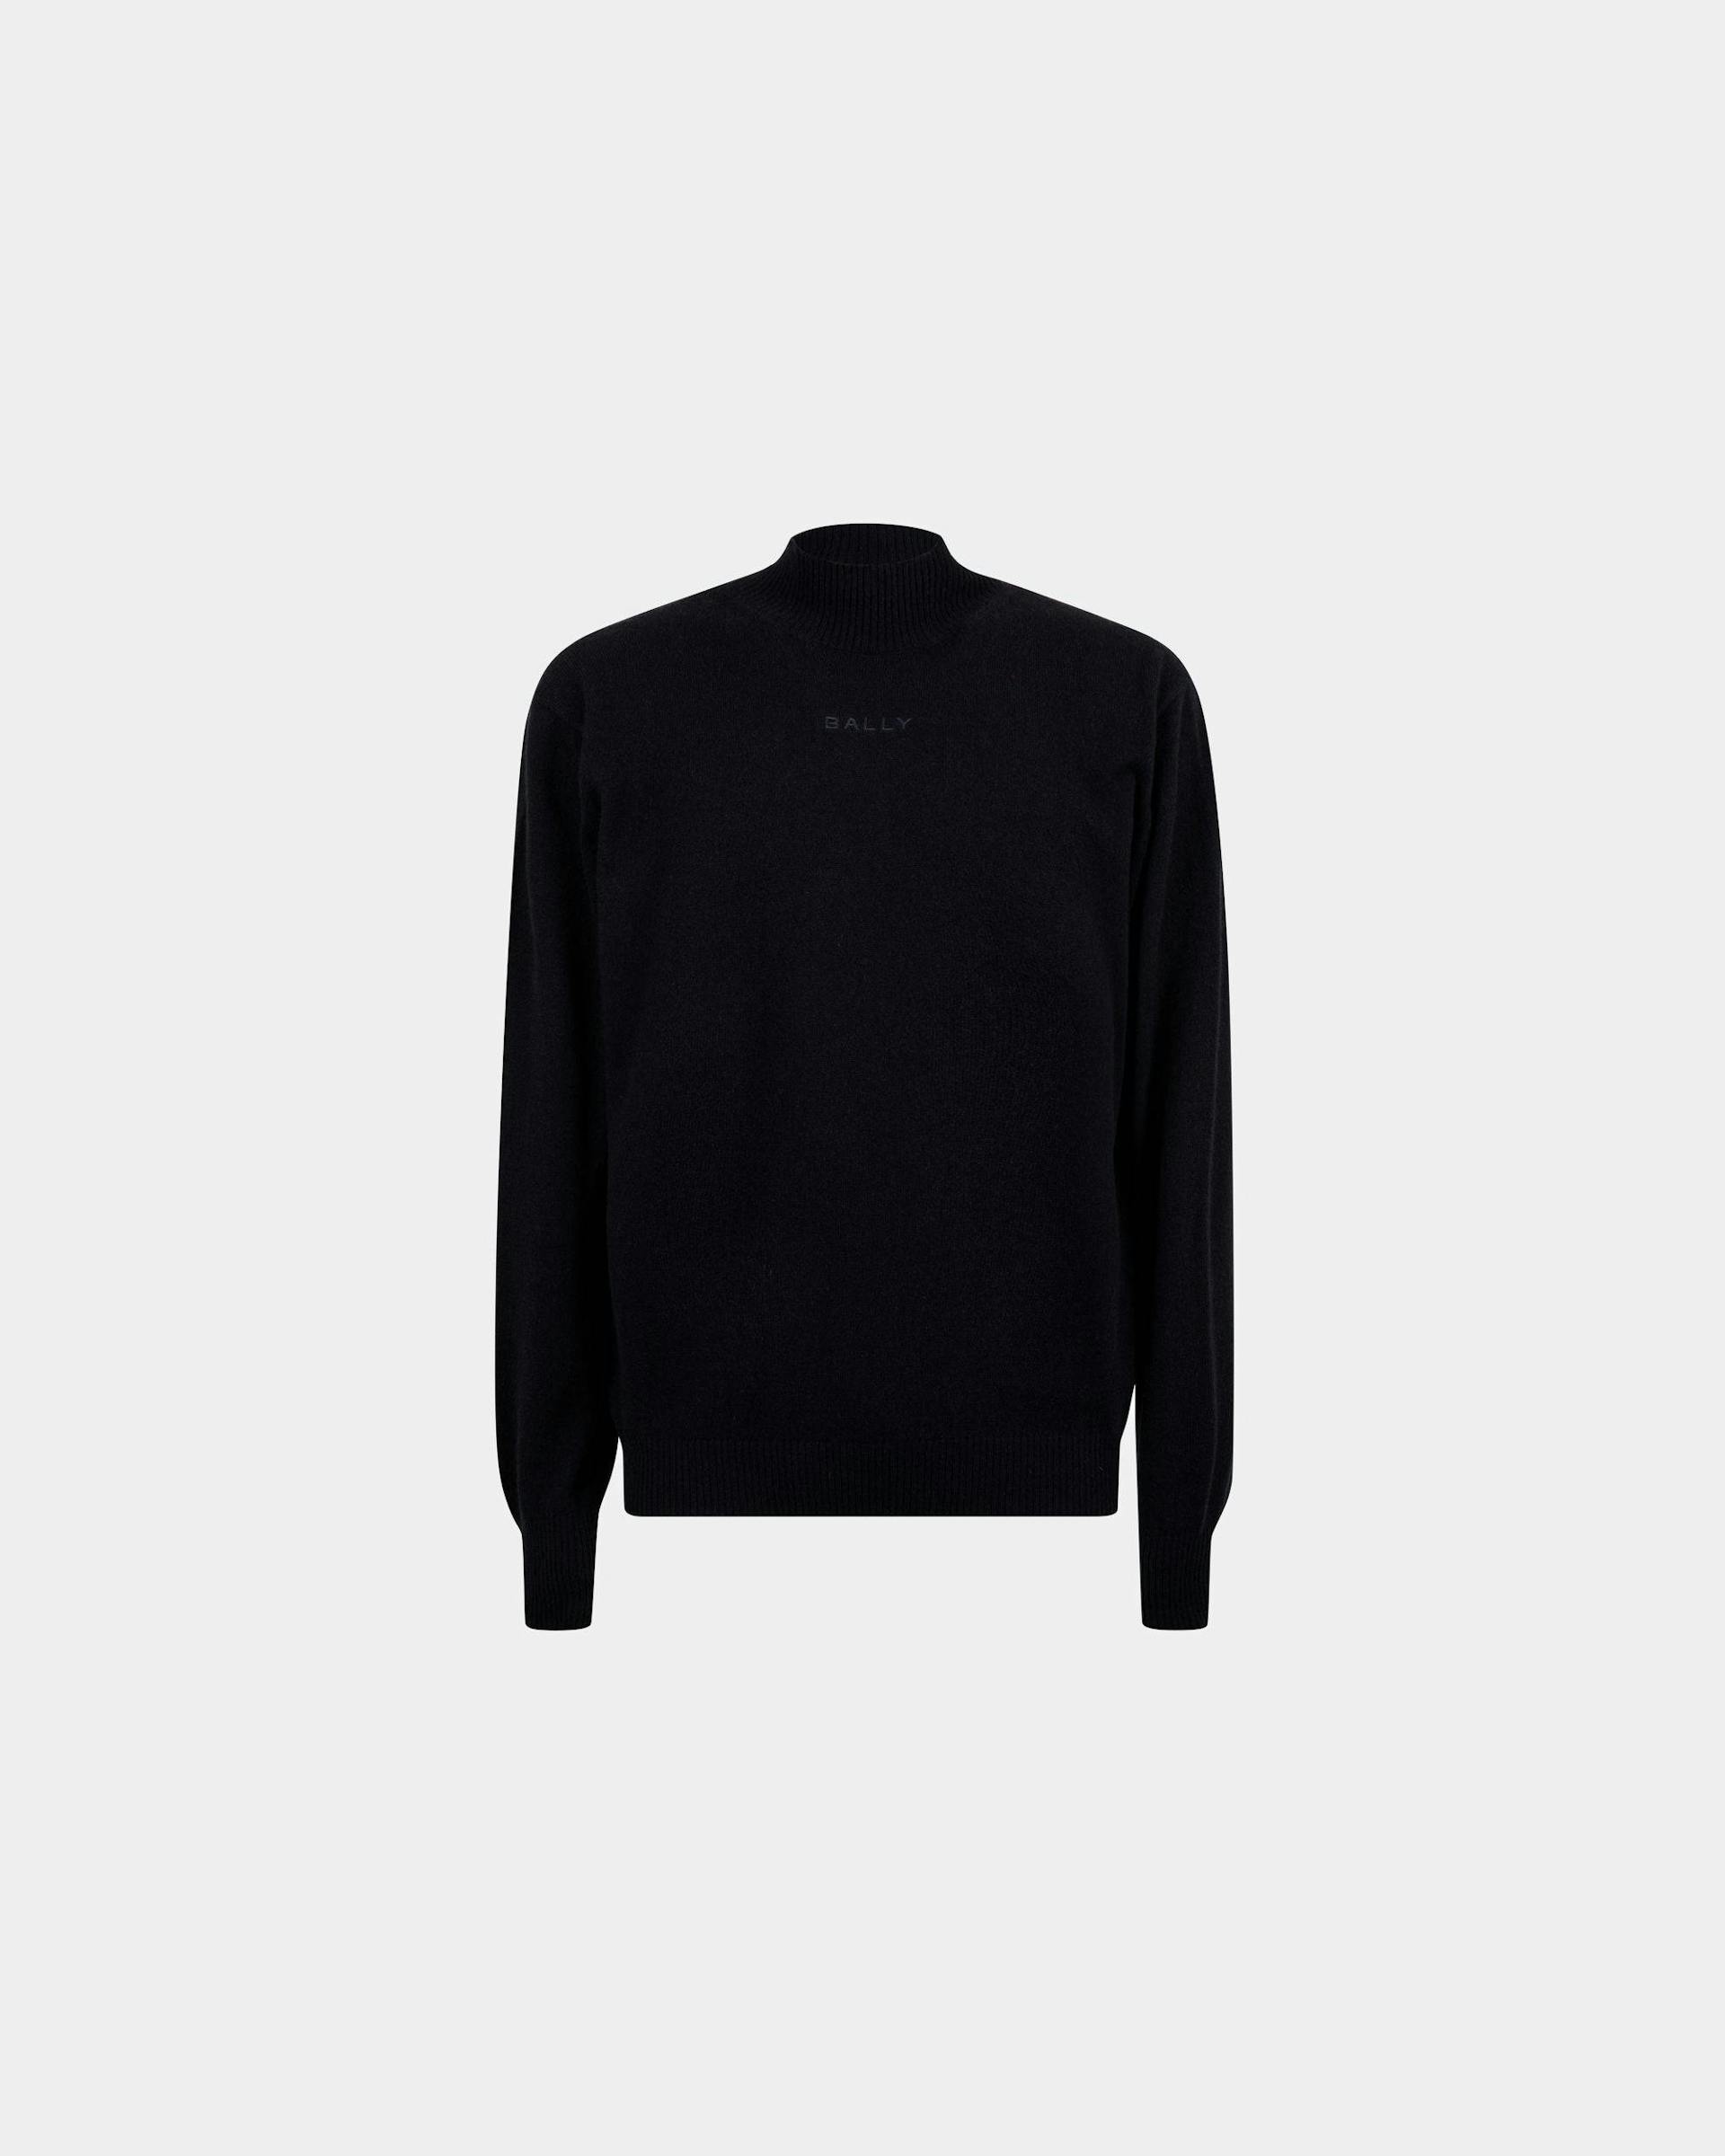 Men's Turtleneck Sweater In Dark Blue Cashmere | Bally | Still Life Front